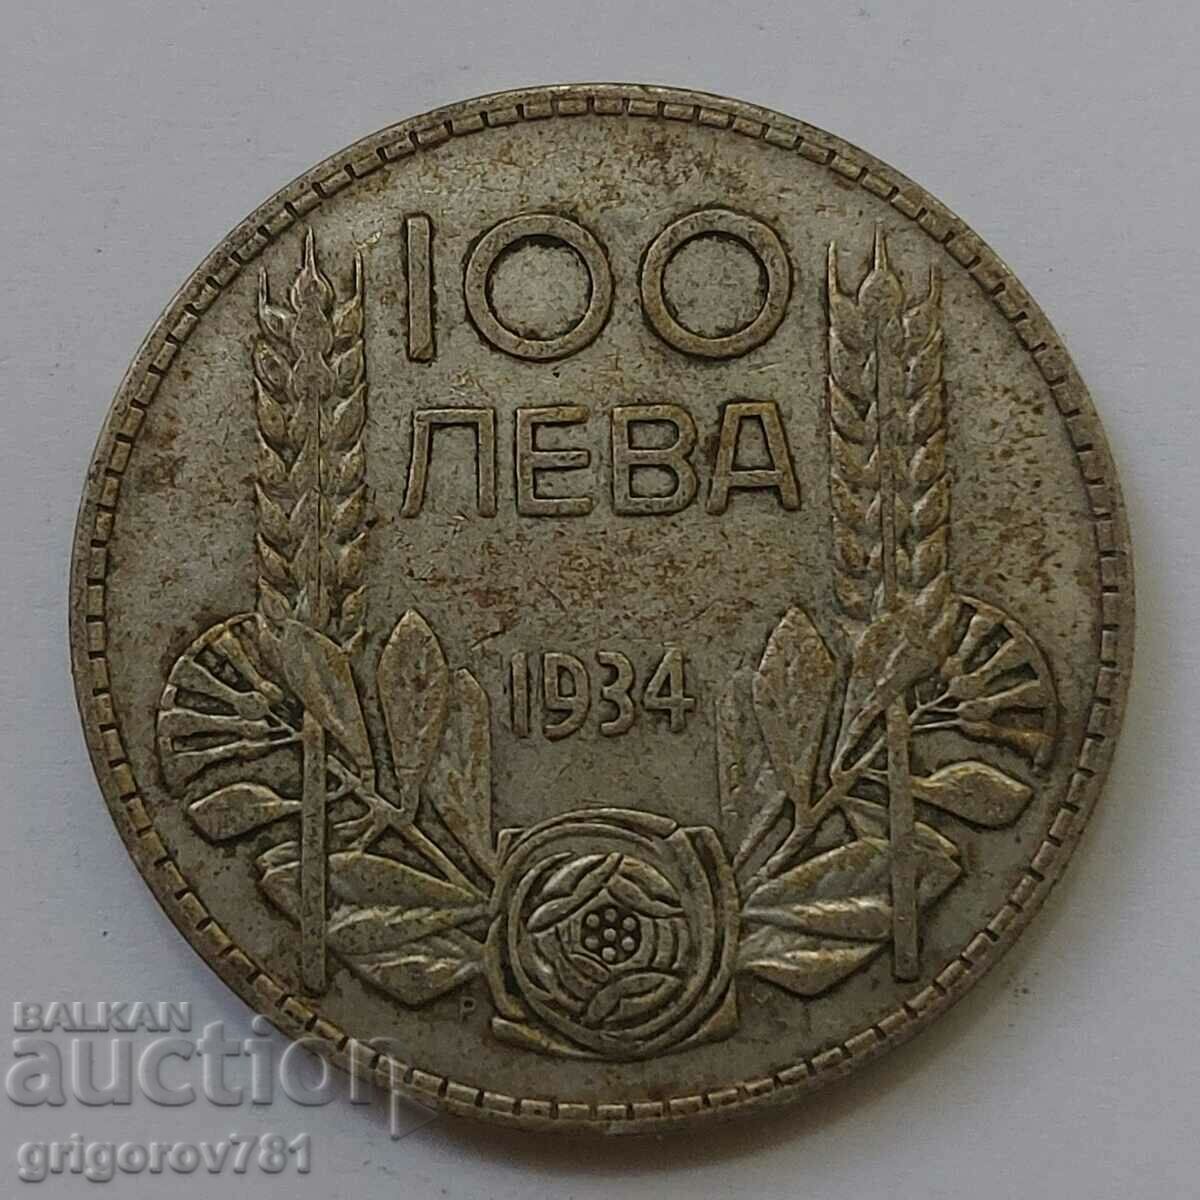 100 leva silver Bulgaria 1934 - silver coin #12